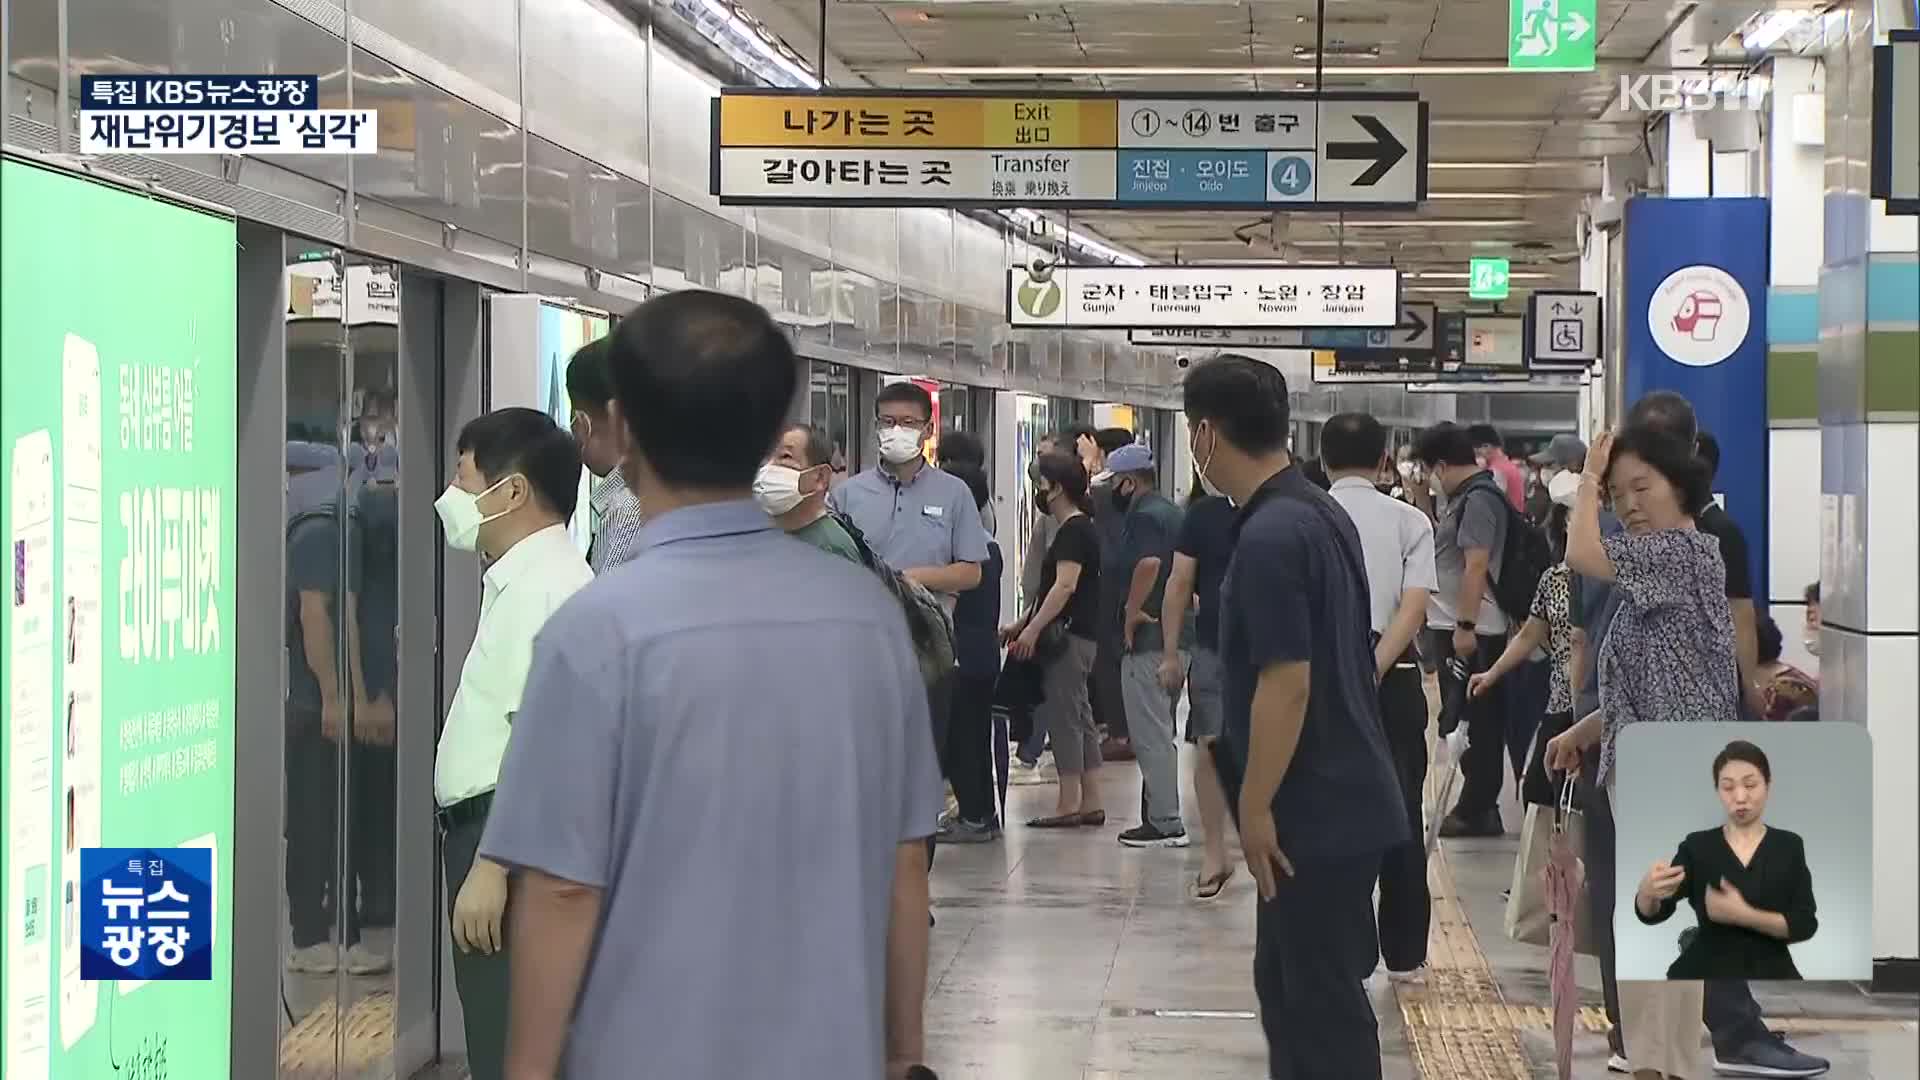 [특보] 지하철 1-8호선 정상 운행…일부 도로는 통제